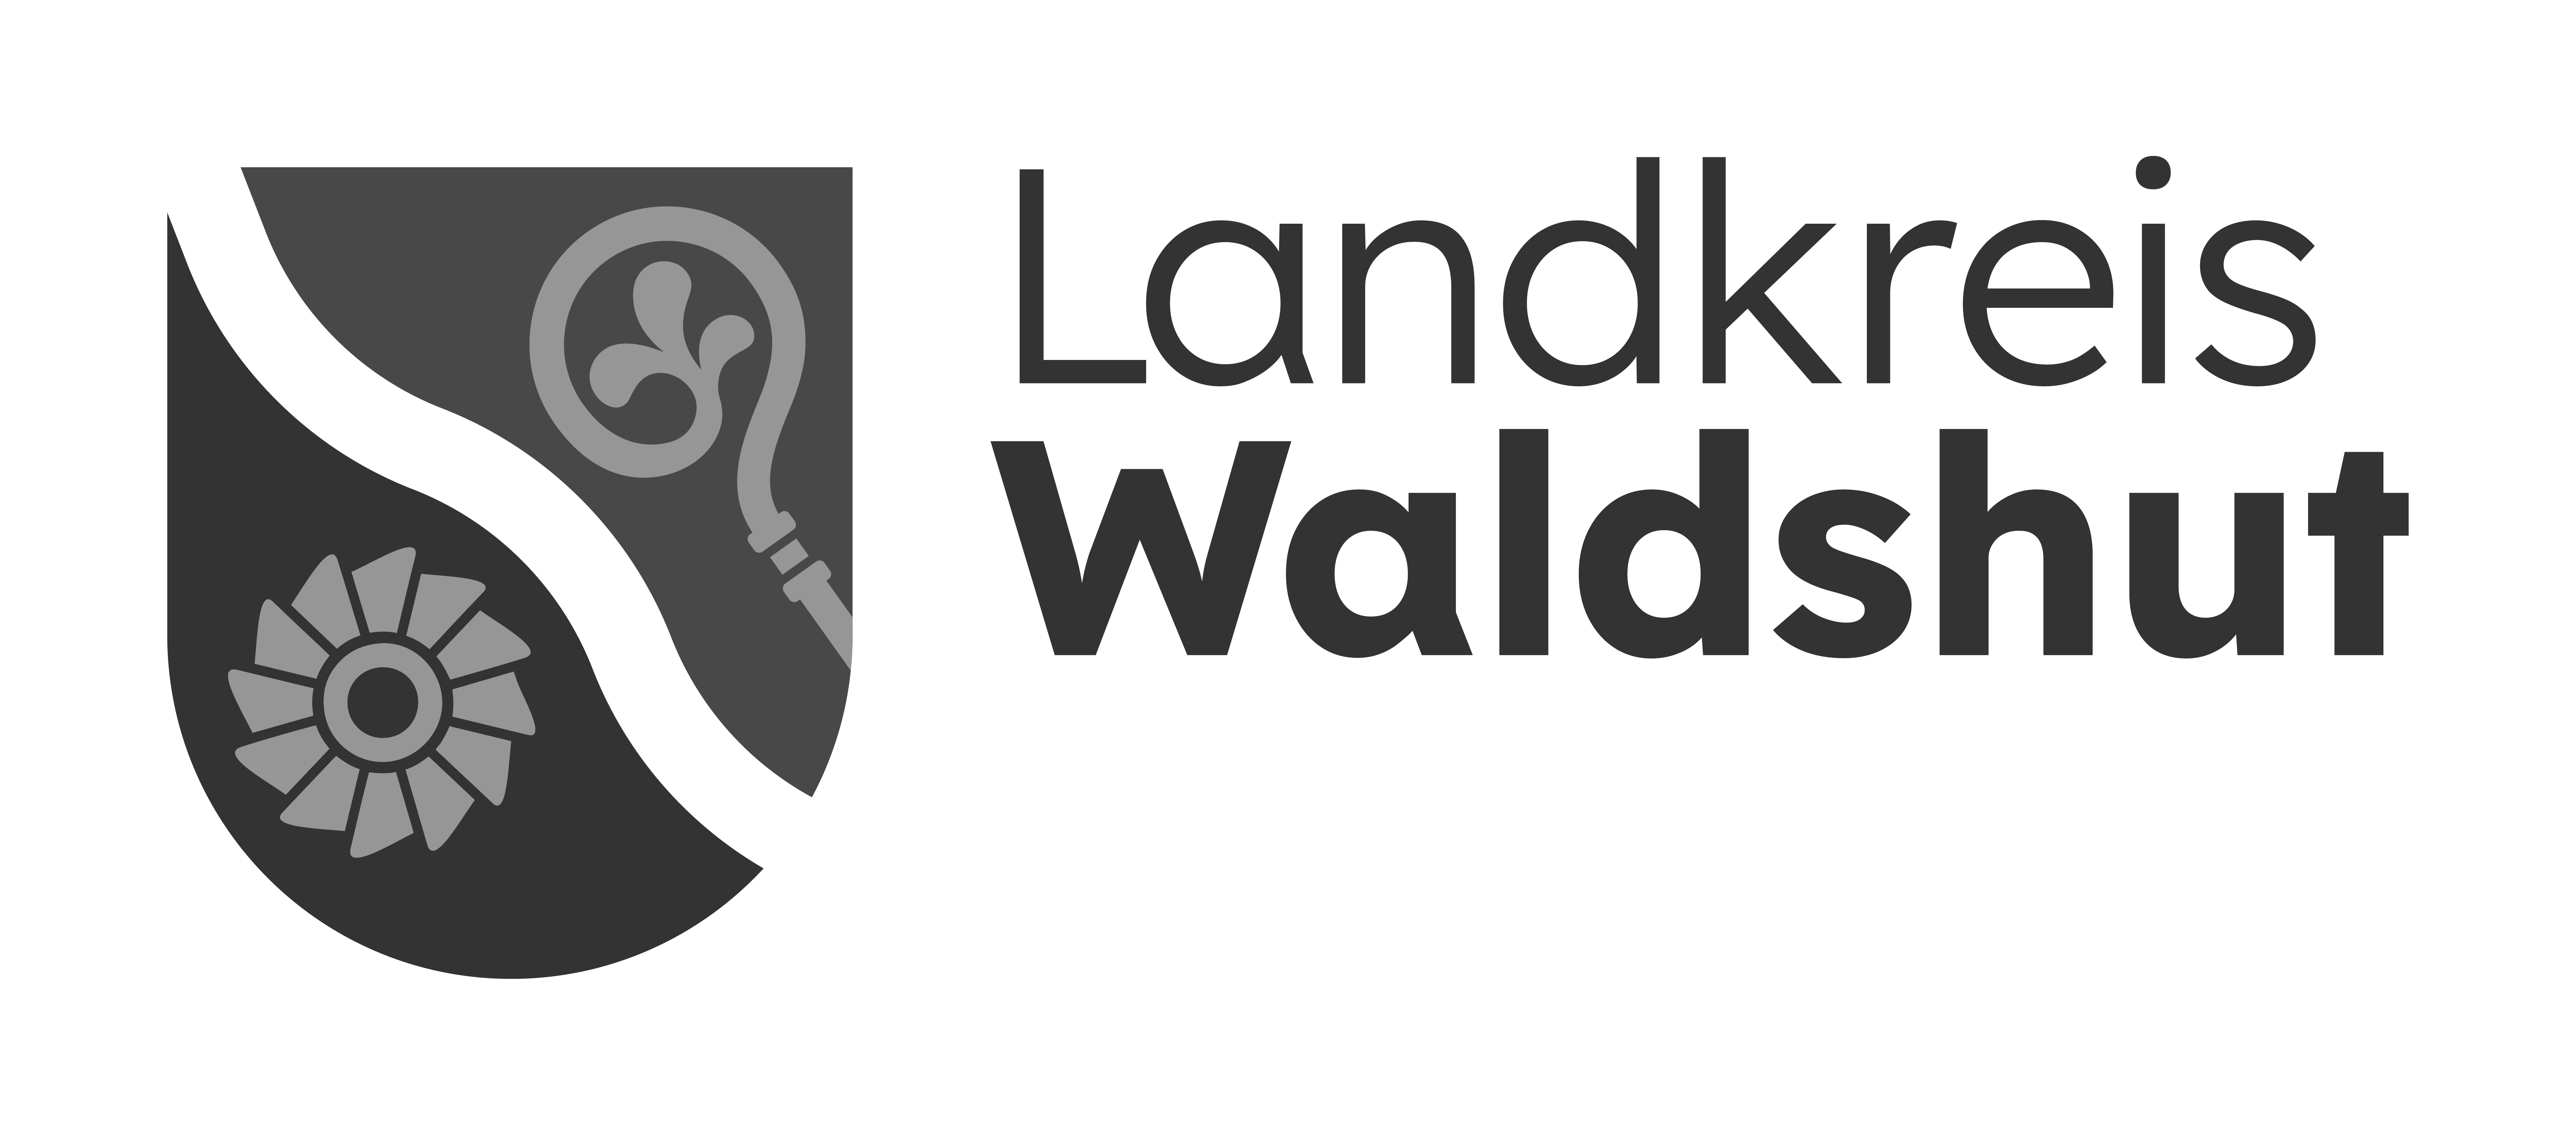 Logo Landkreis Waldshut